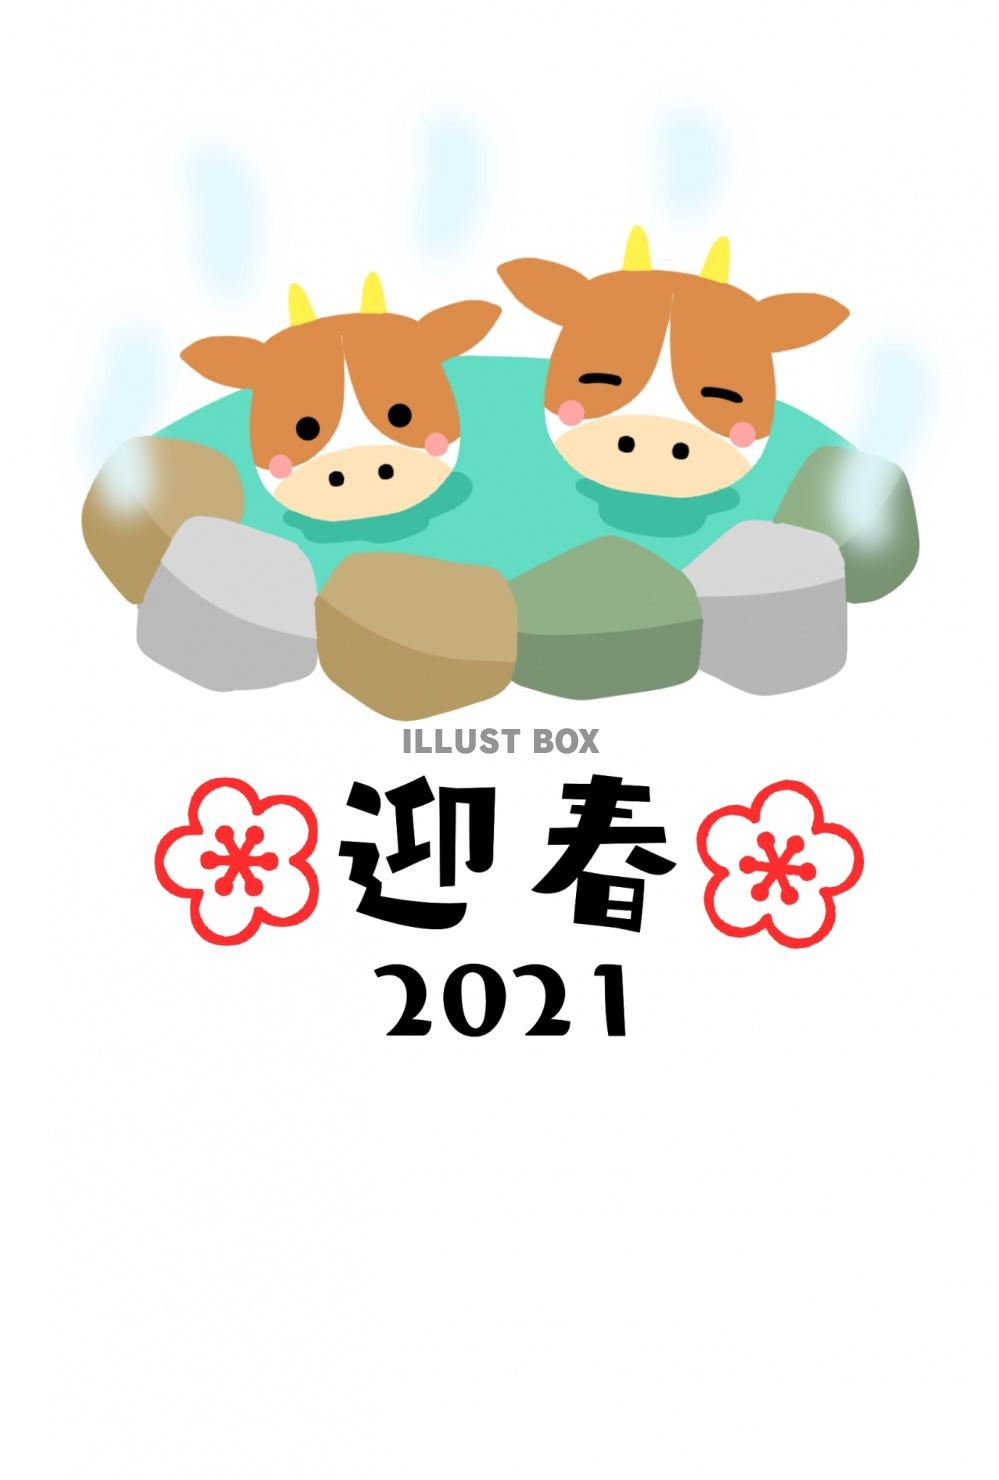 茶色の牛2頭が温泉につかっている2021の丑年年賀状